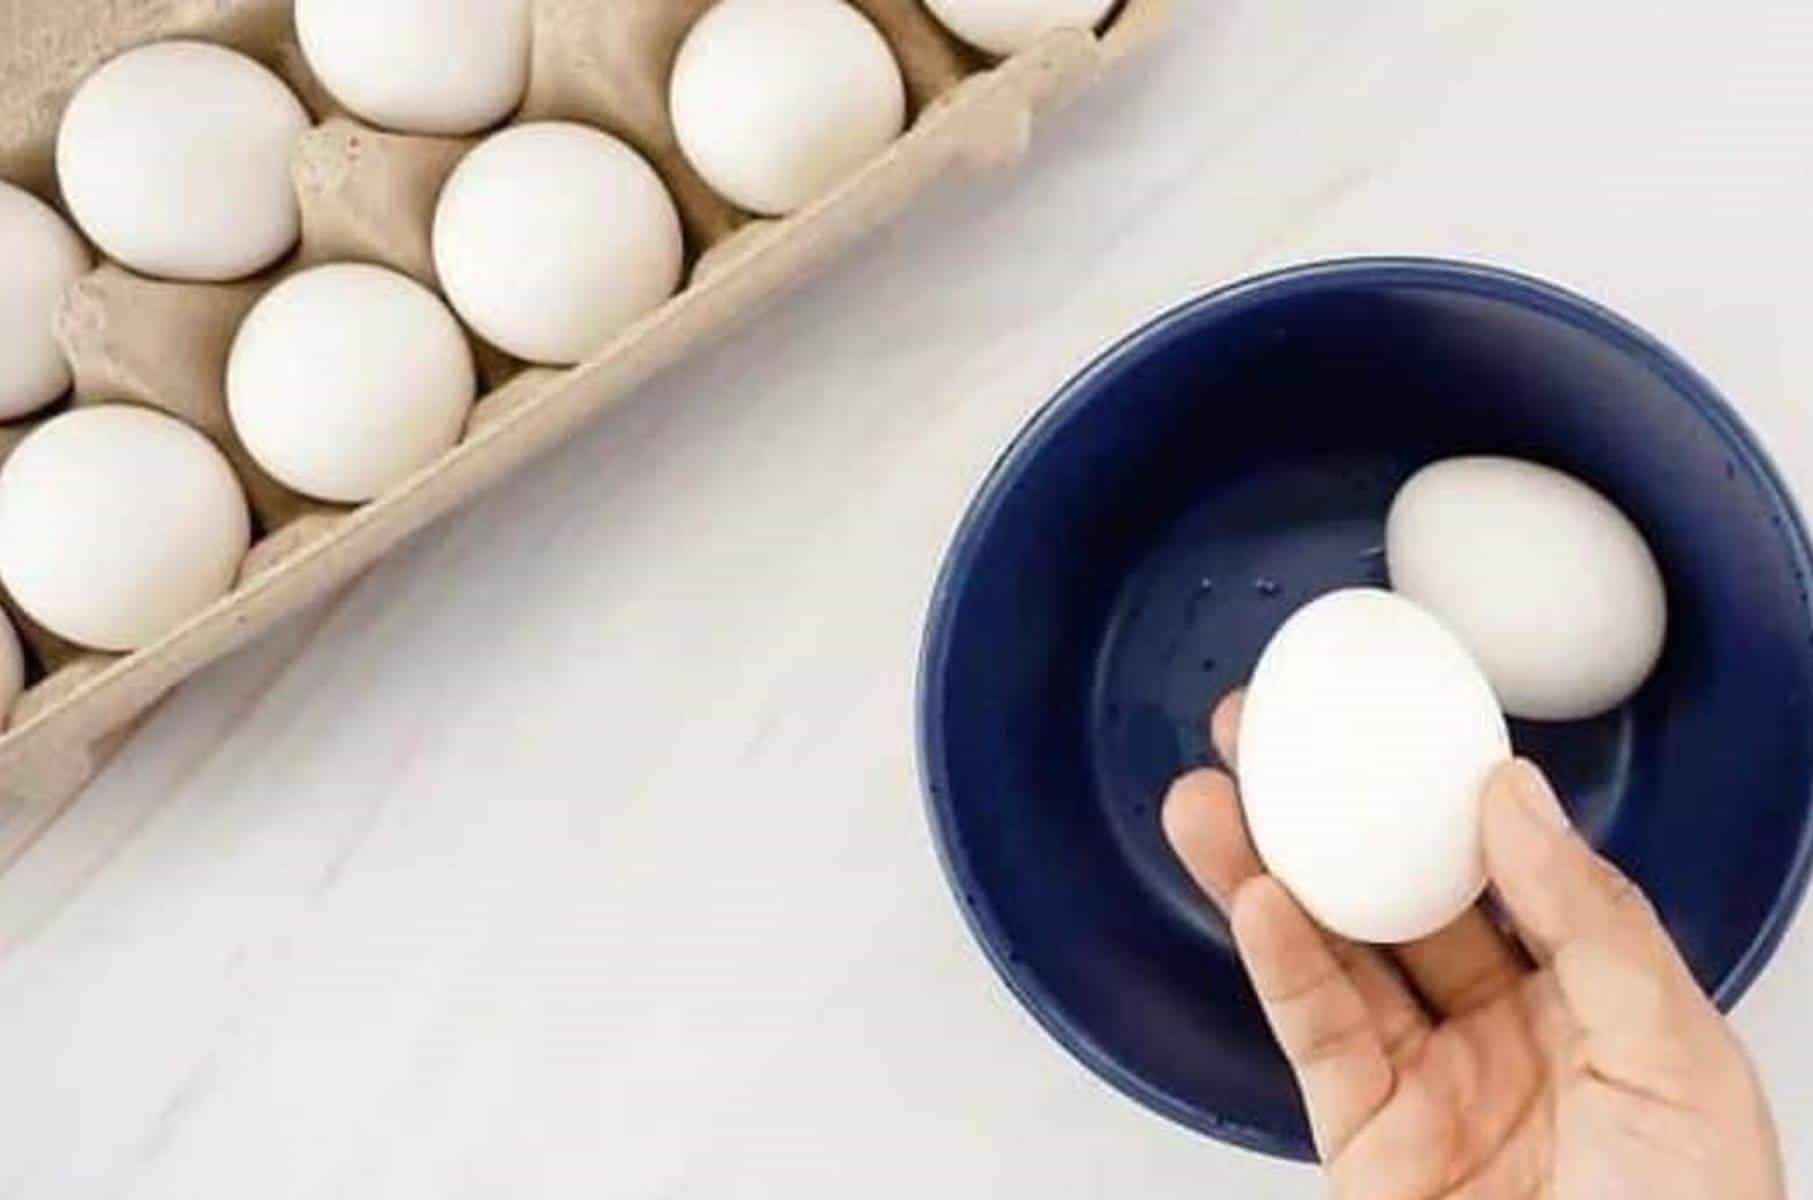 Como você sabe se um ovo cru é velho? Descubra agora com este truque simples